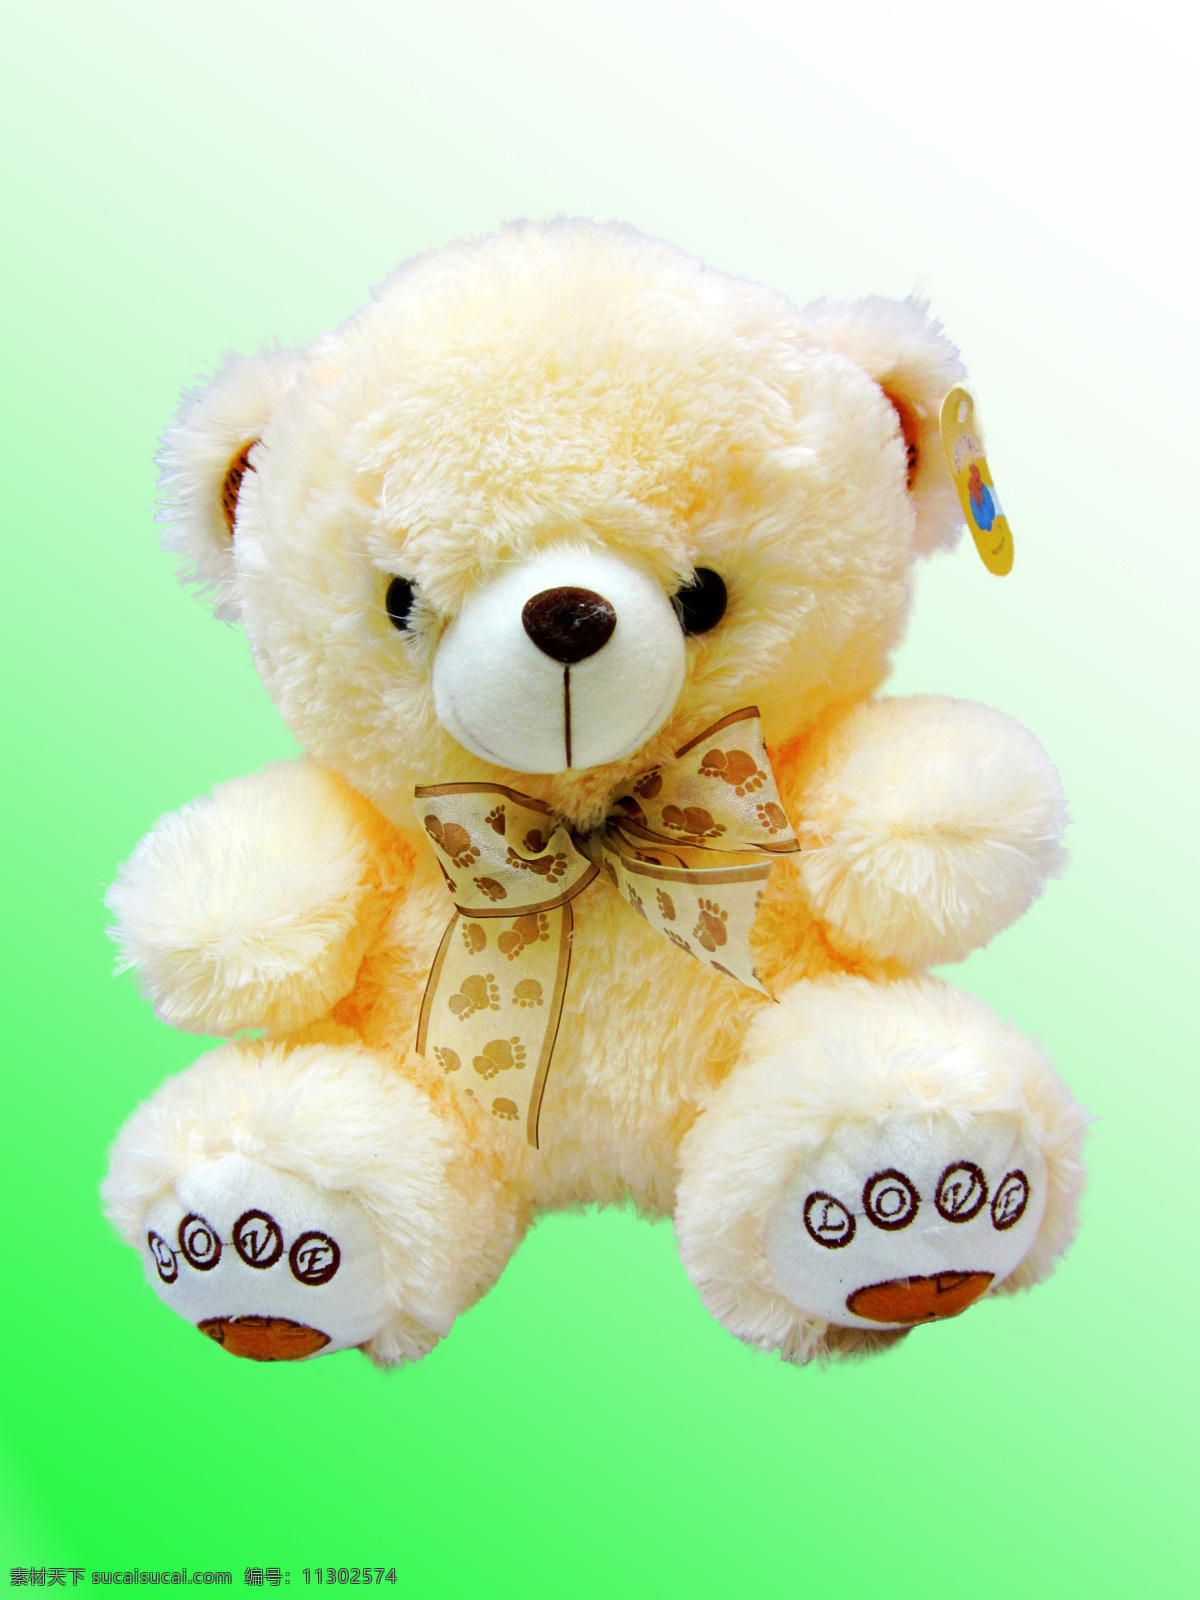 泰迪 熊 好看 家居生活 可爱 毛绒玩具 漂亮 生活百科 泰迪熊